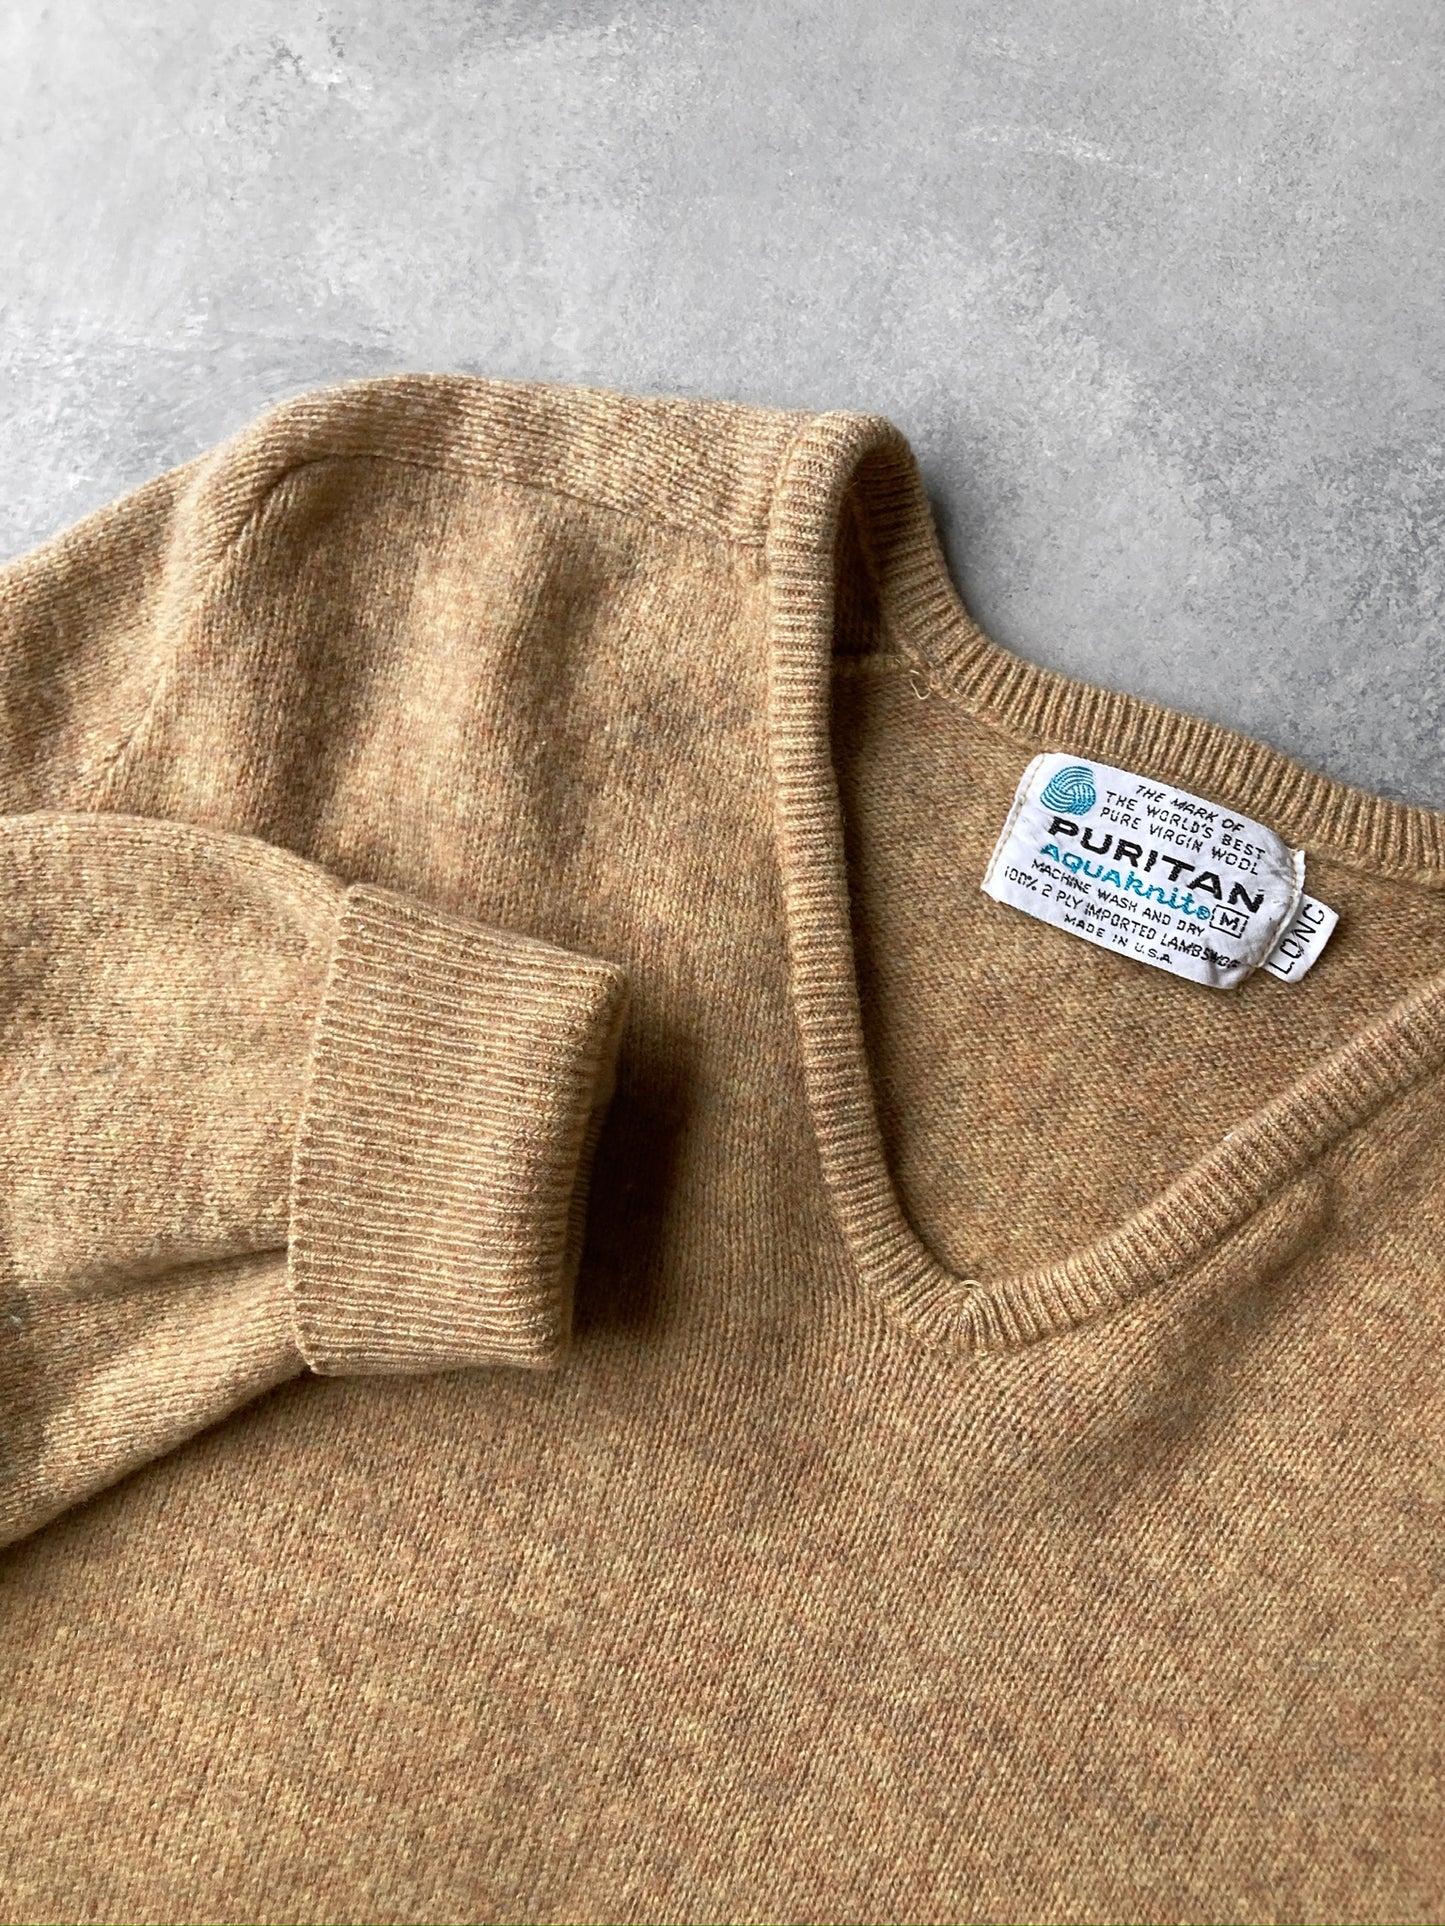 Tan Wool Sweater 70's - Medium Tall